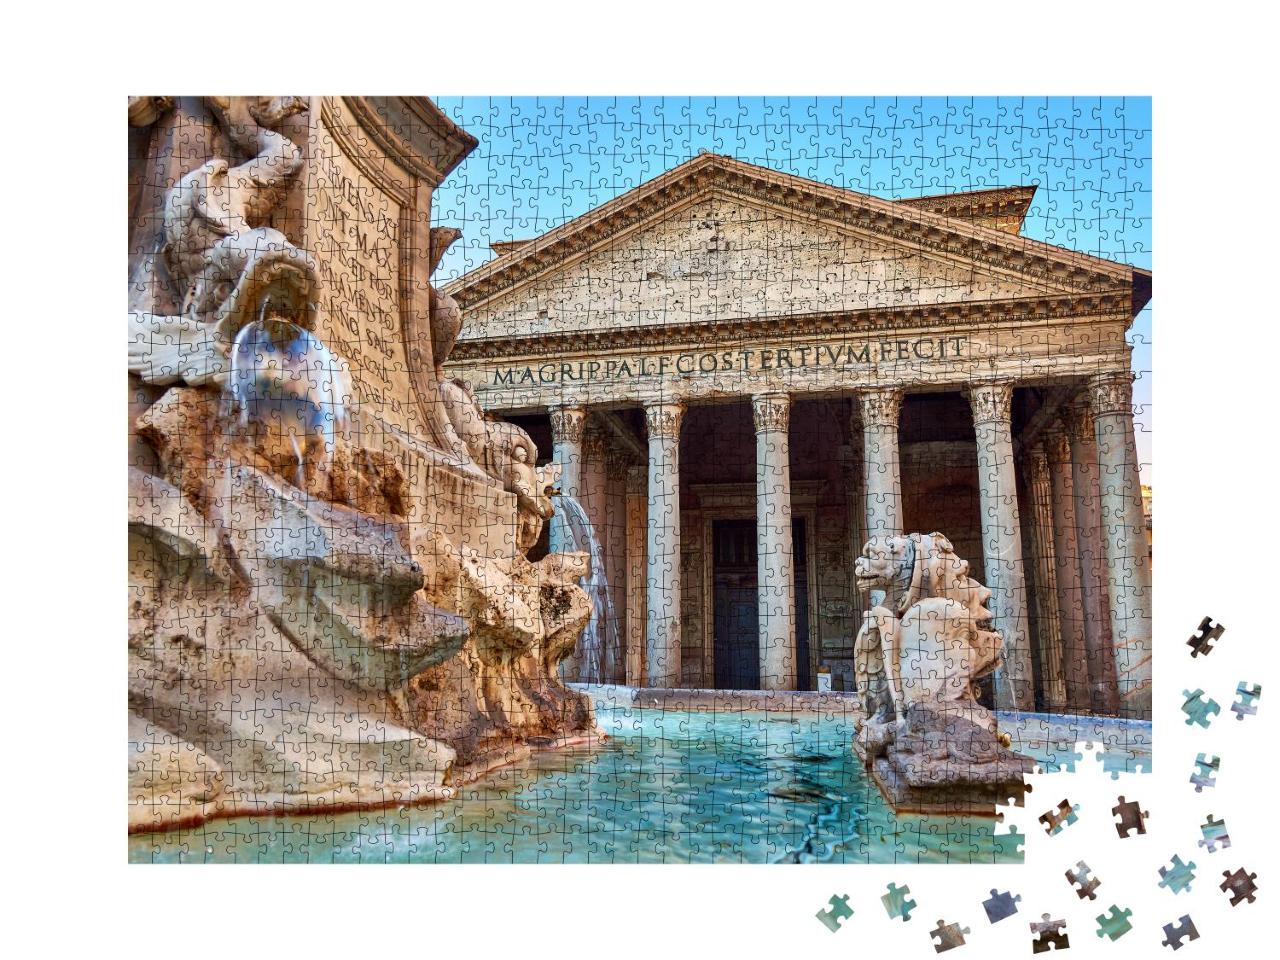 Puzzle 1000 Teile „Ansicht des Brunnens beim Patheon in Rom“